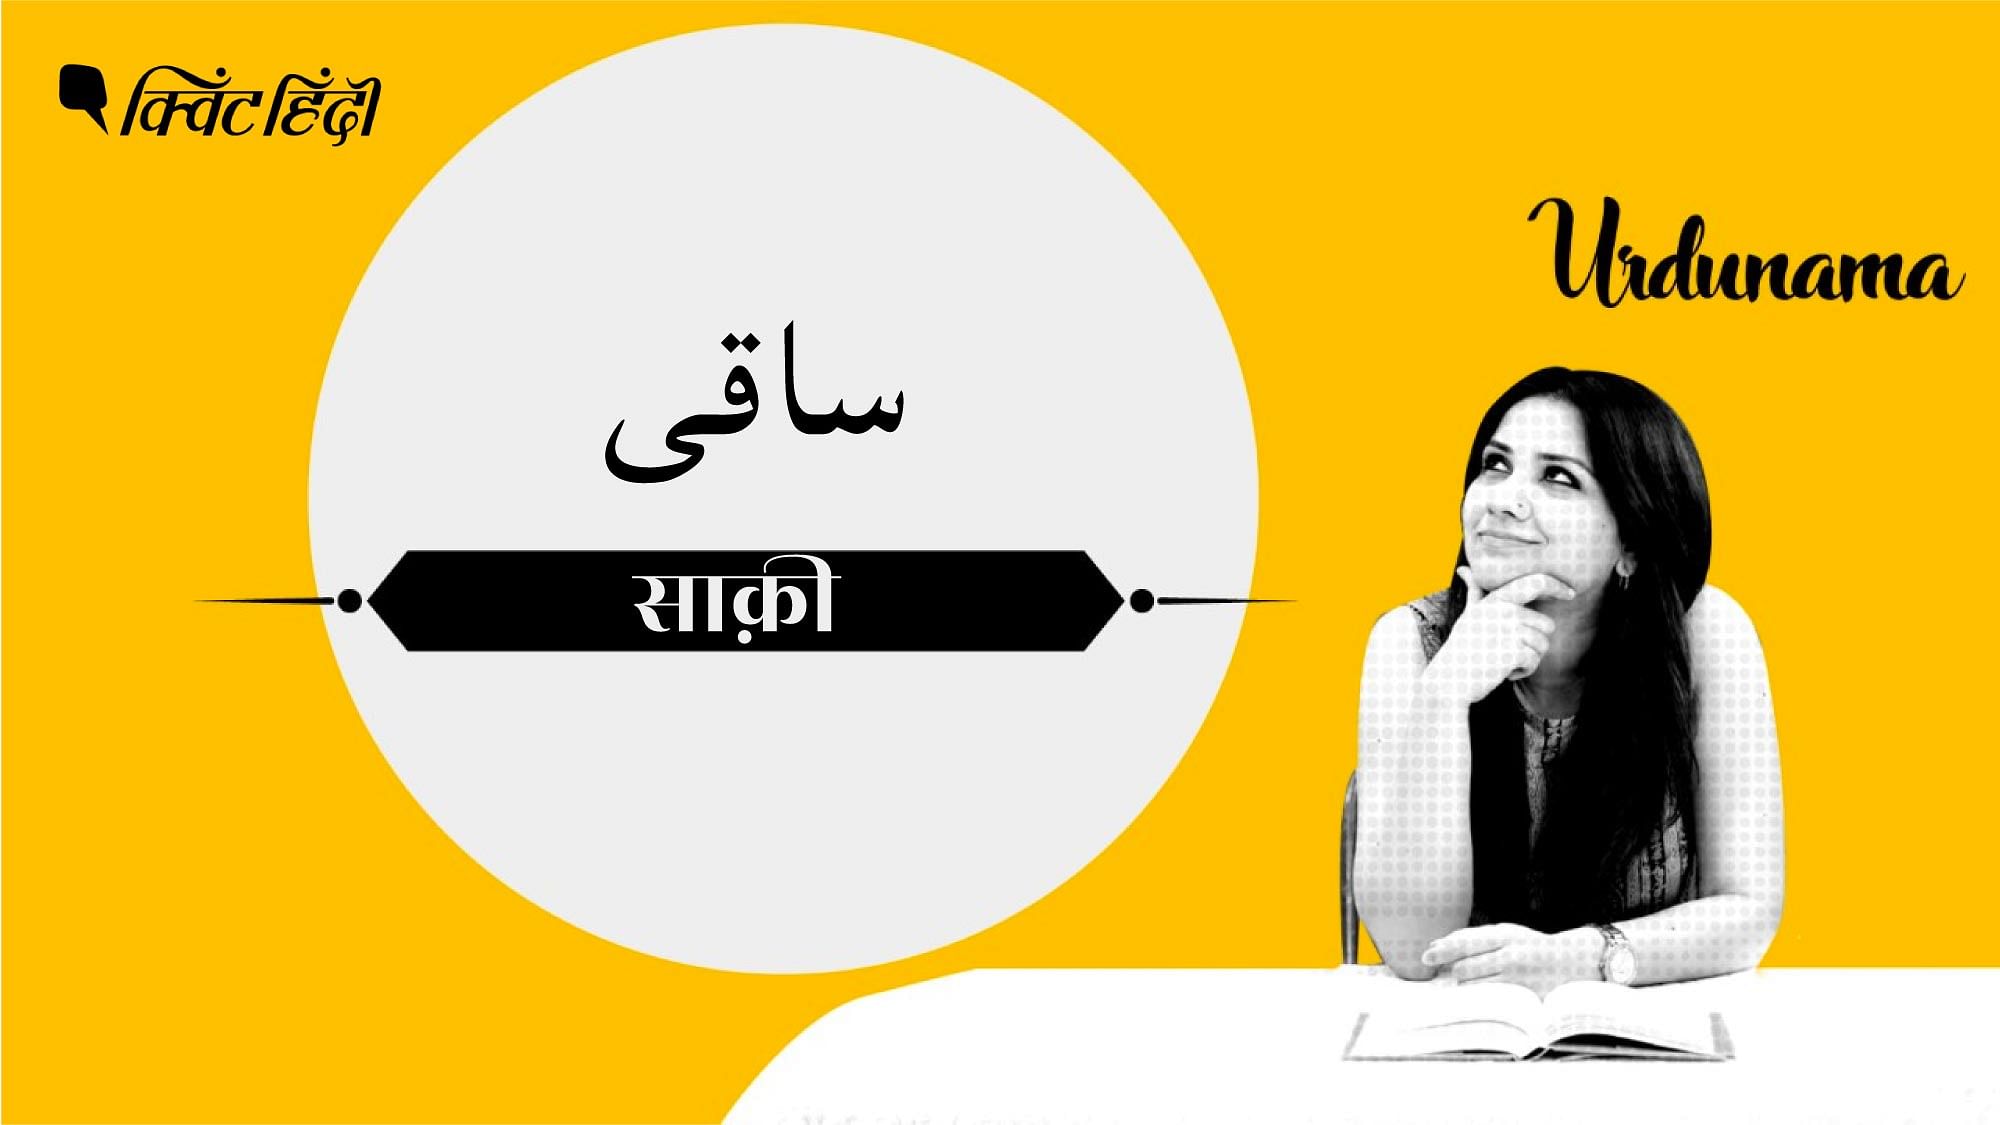 <div class="paragraphs"><p>इस पॉडकास्ट में सुनिए उर्दू के मशहूर शायर, अजहर इकबाल को.</p></div>